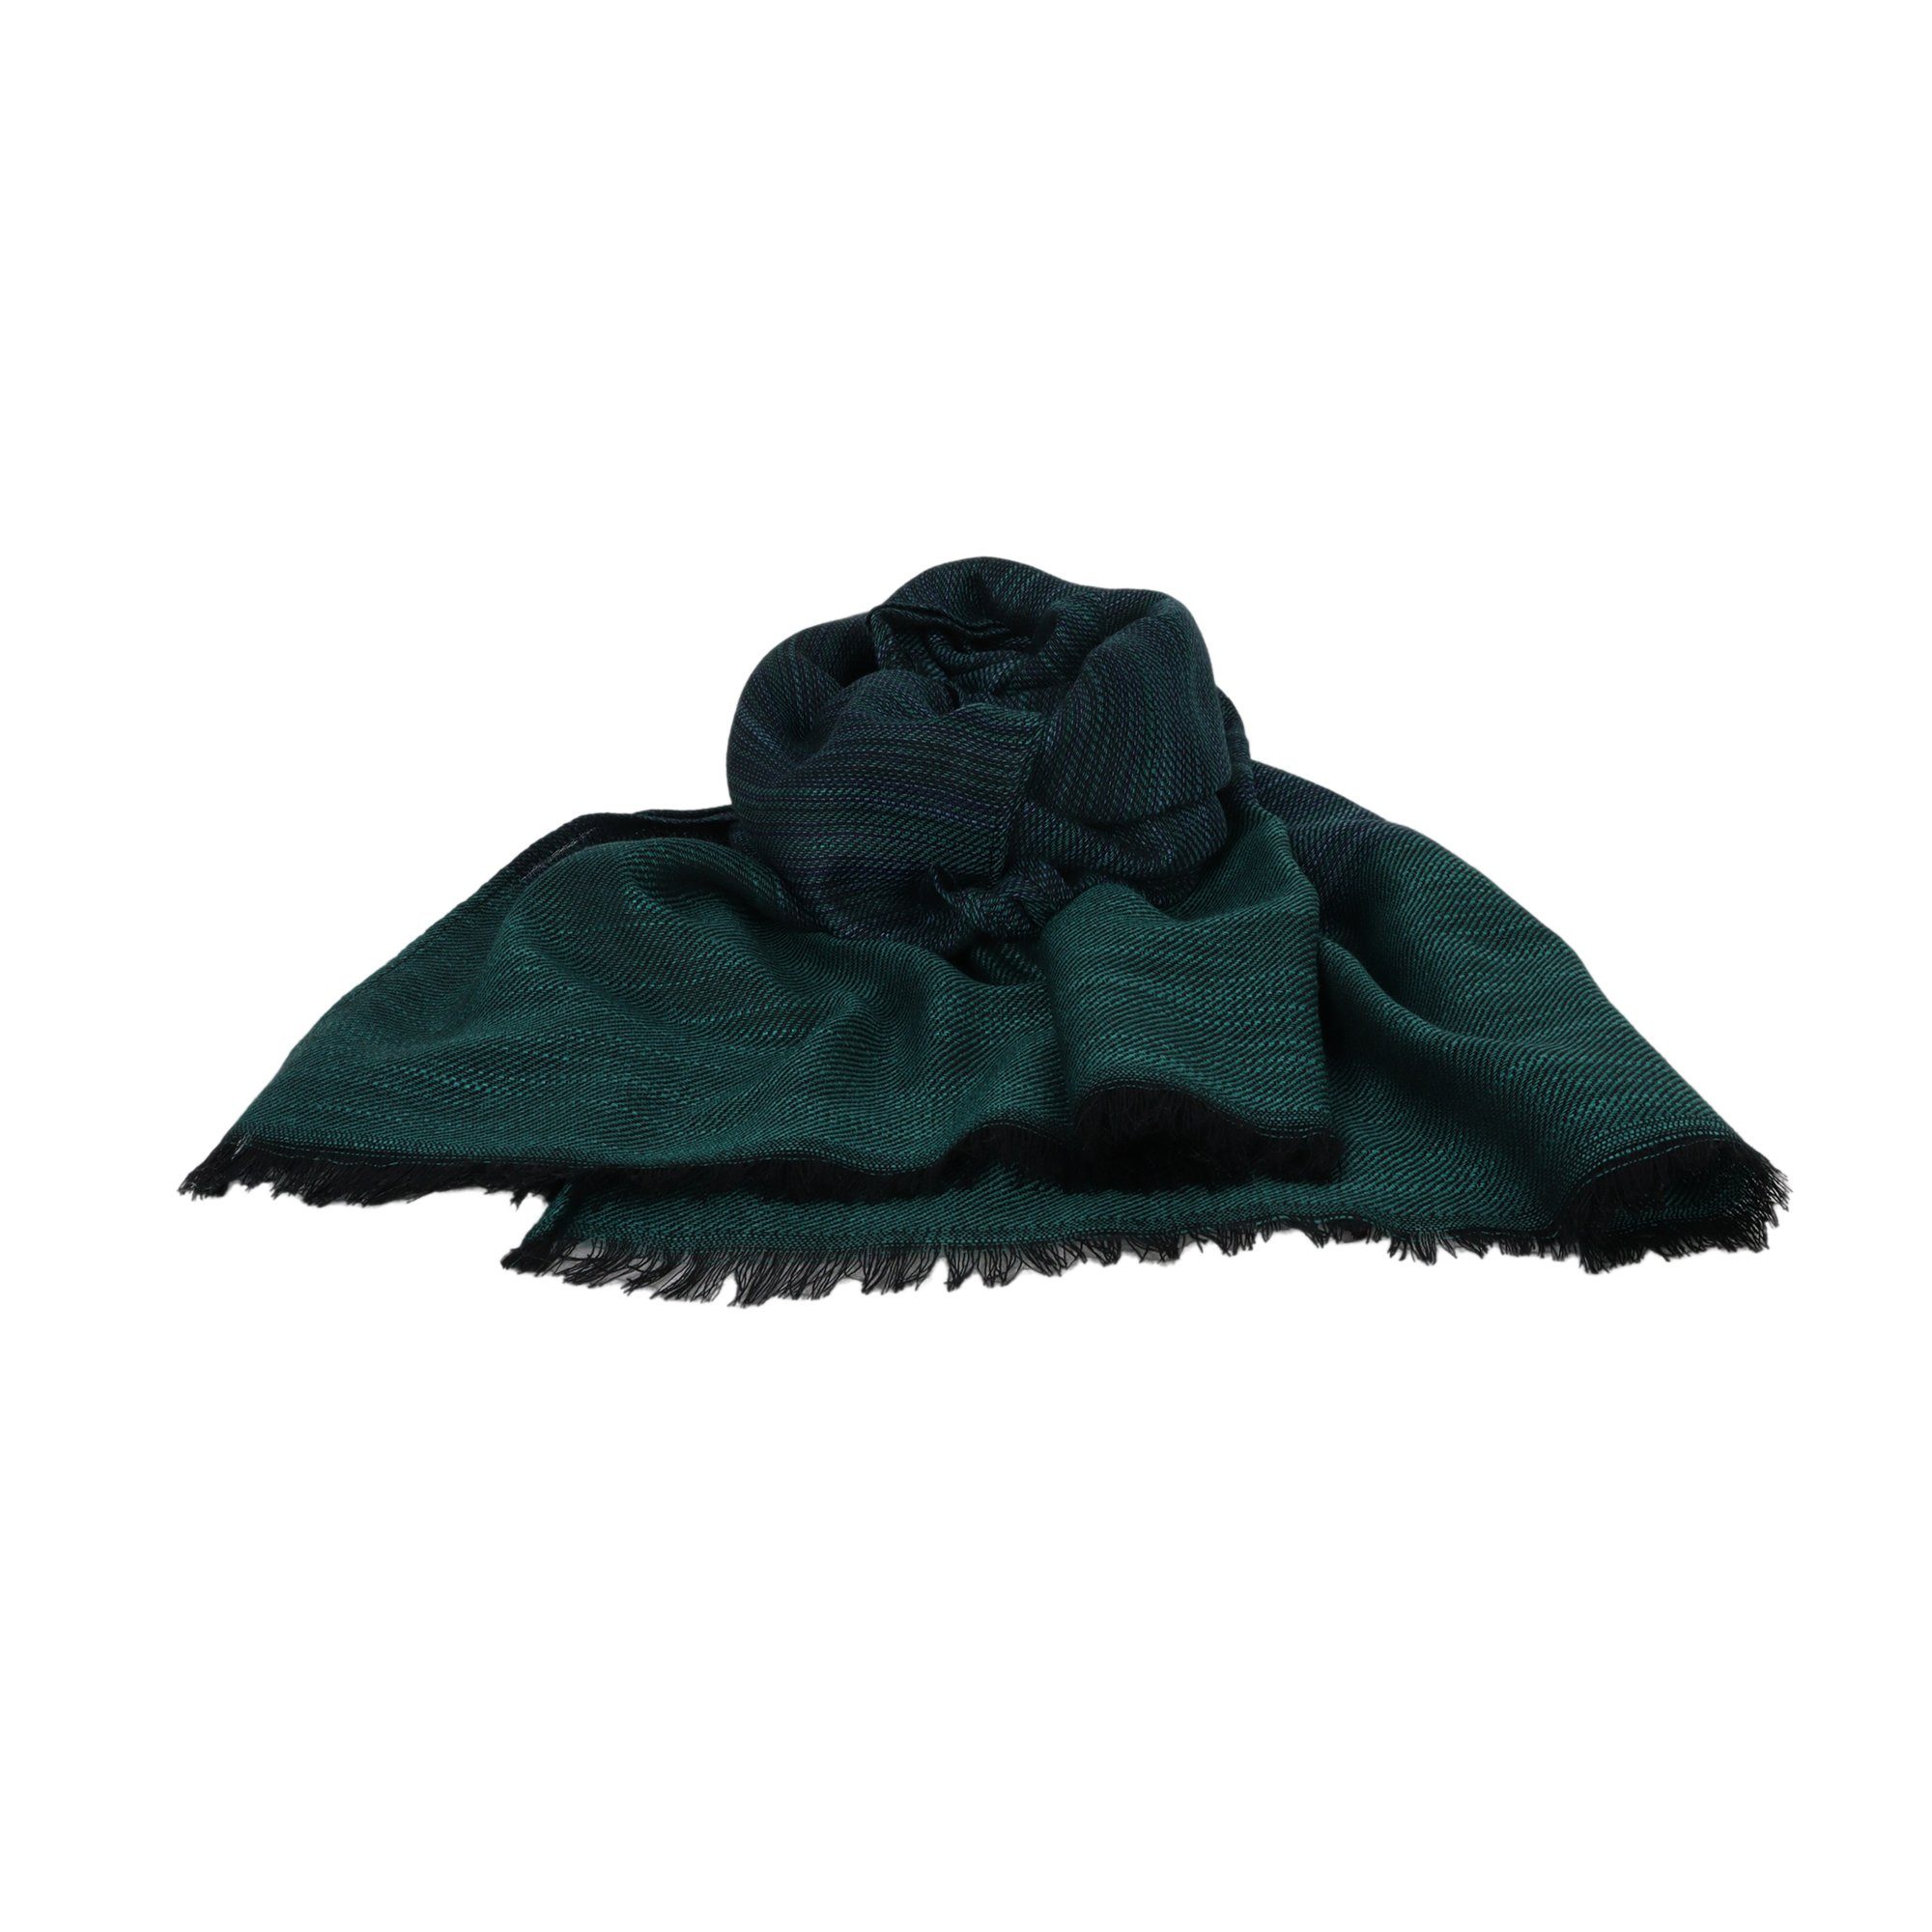 Modeschal ZEBRO grün Schal